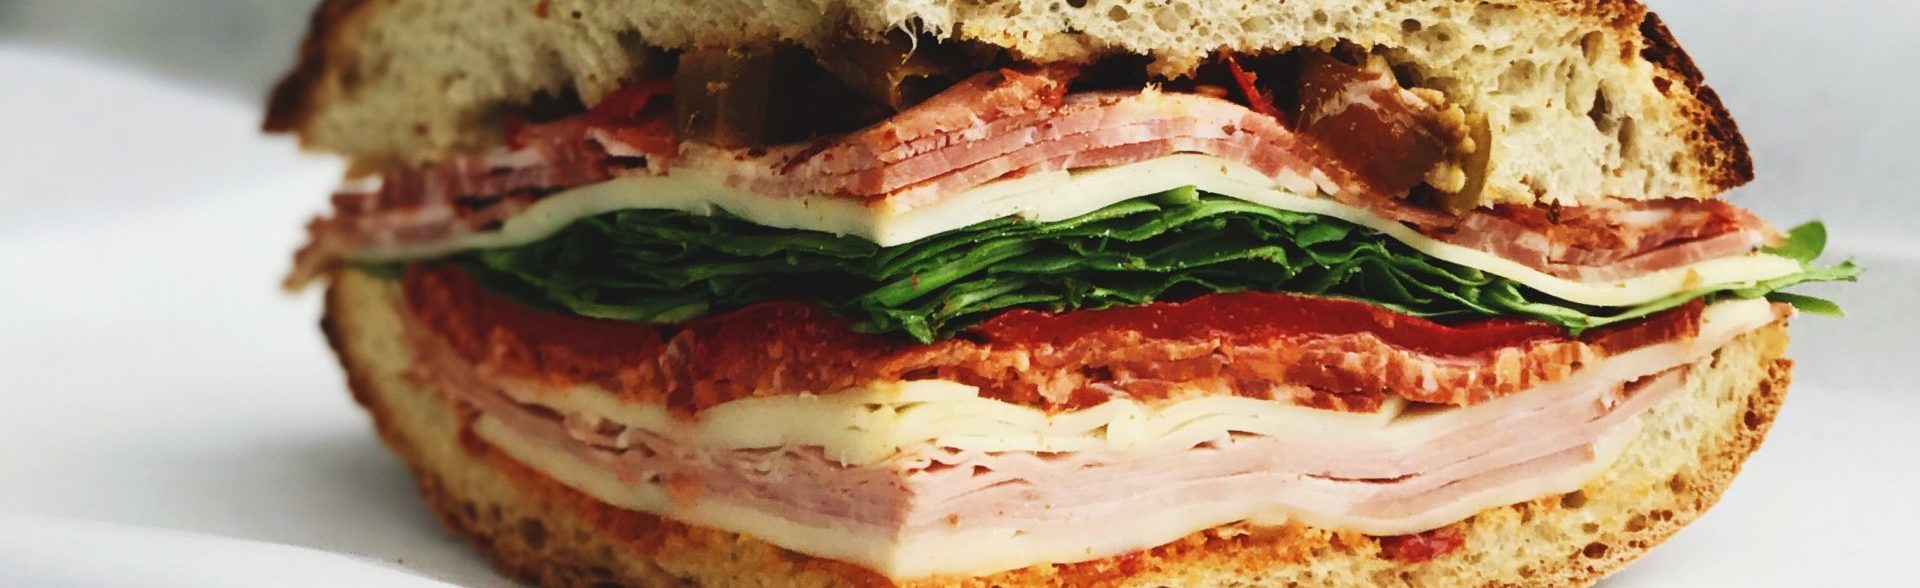 A muffaletta sandwich